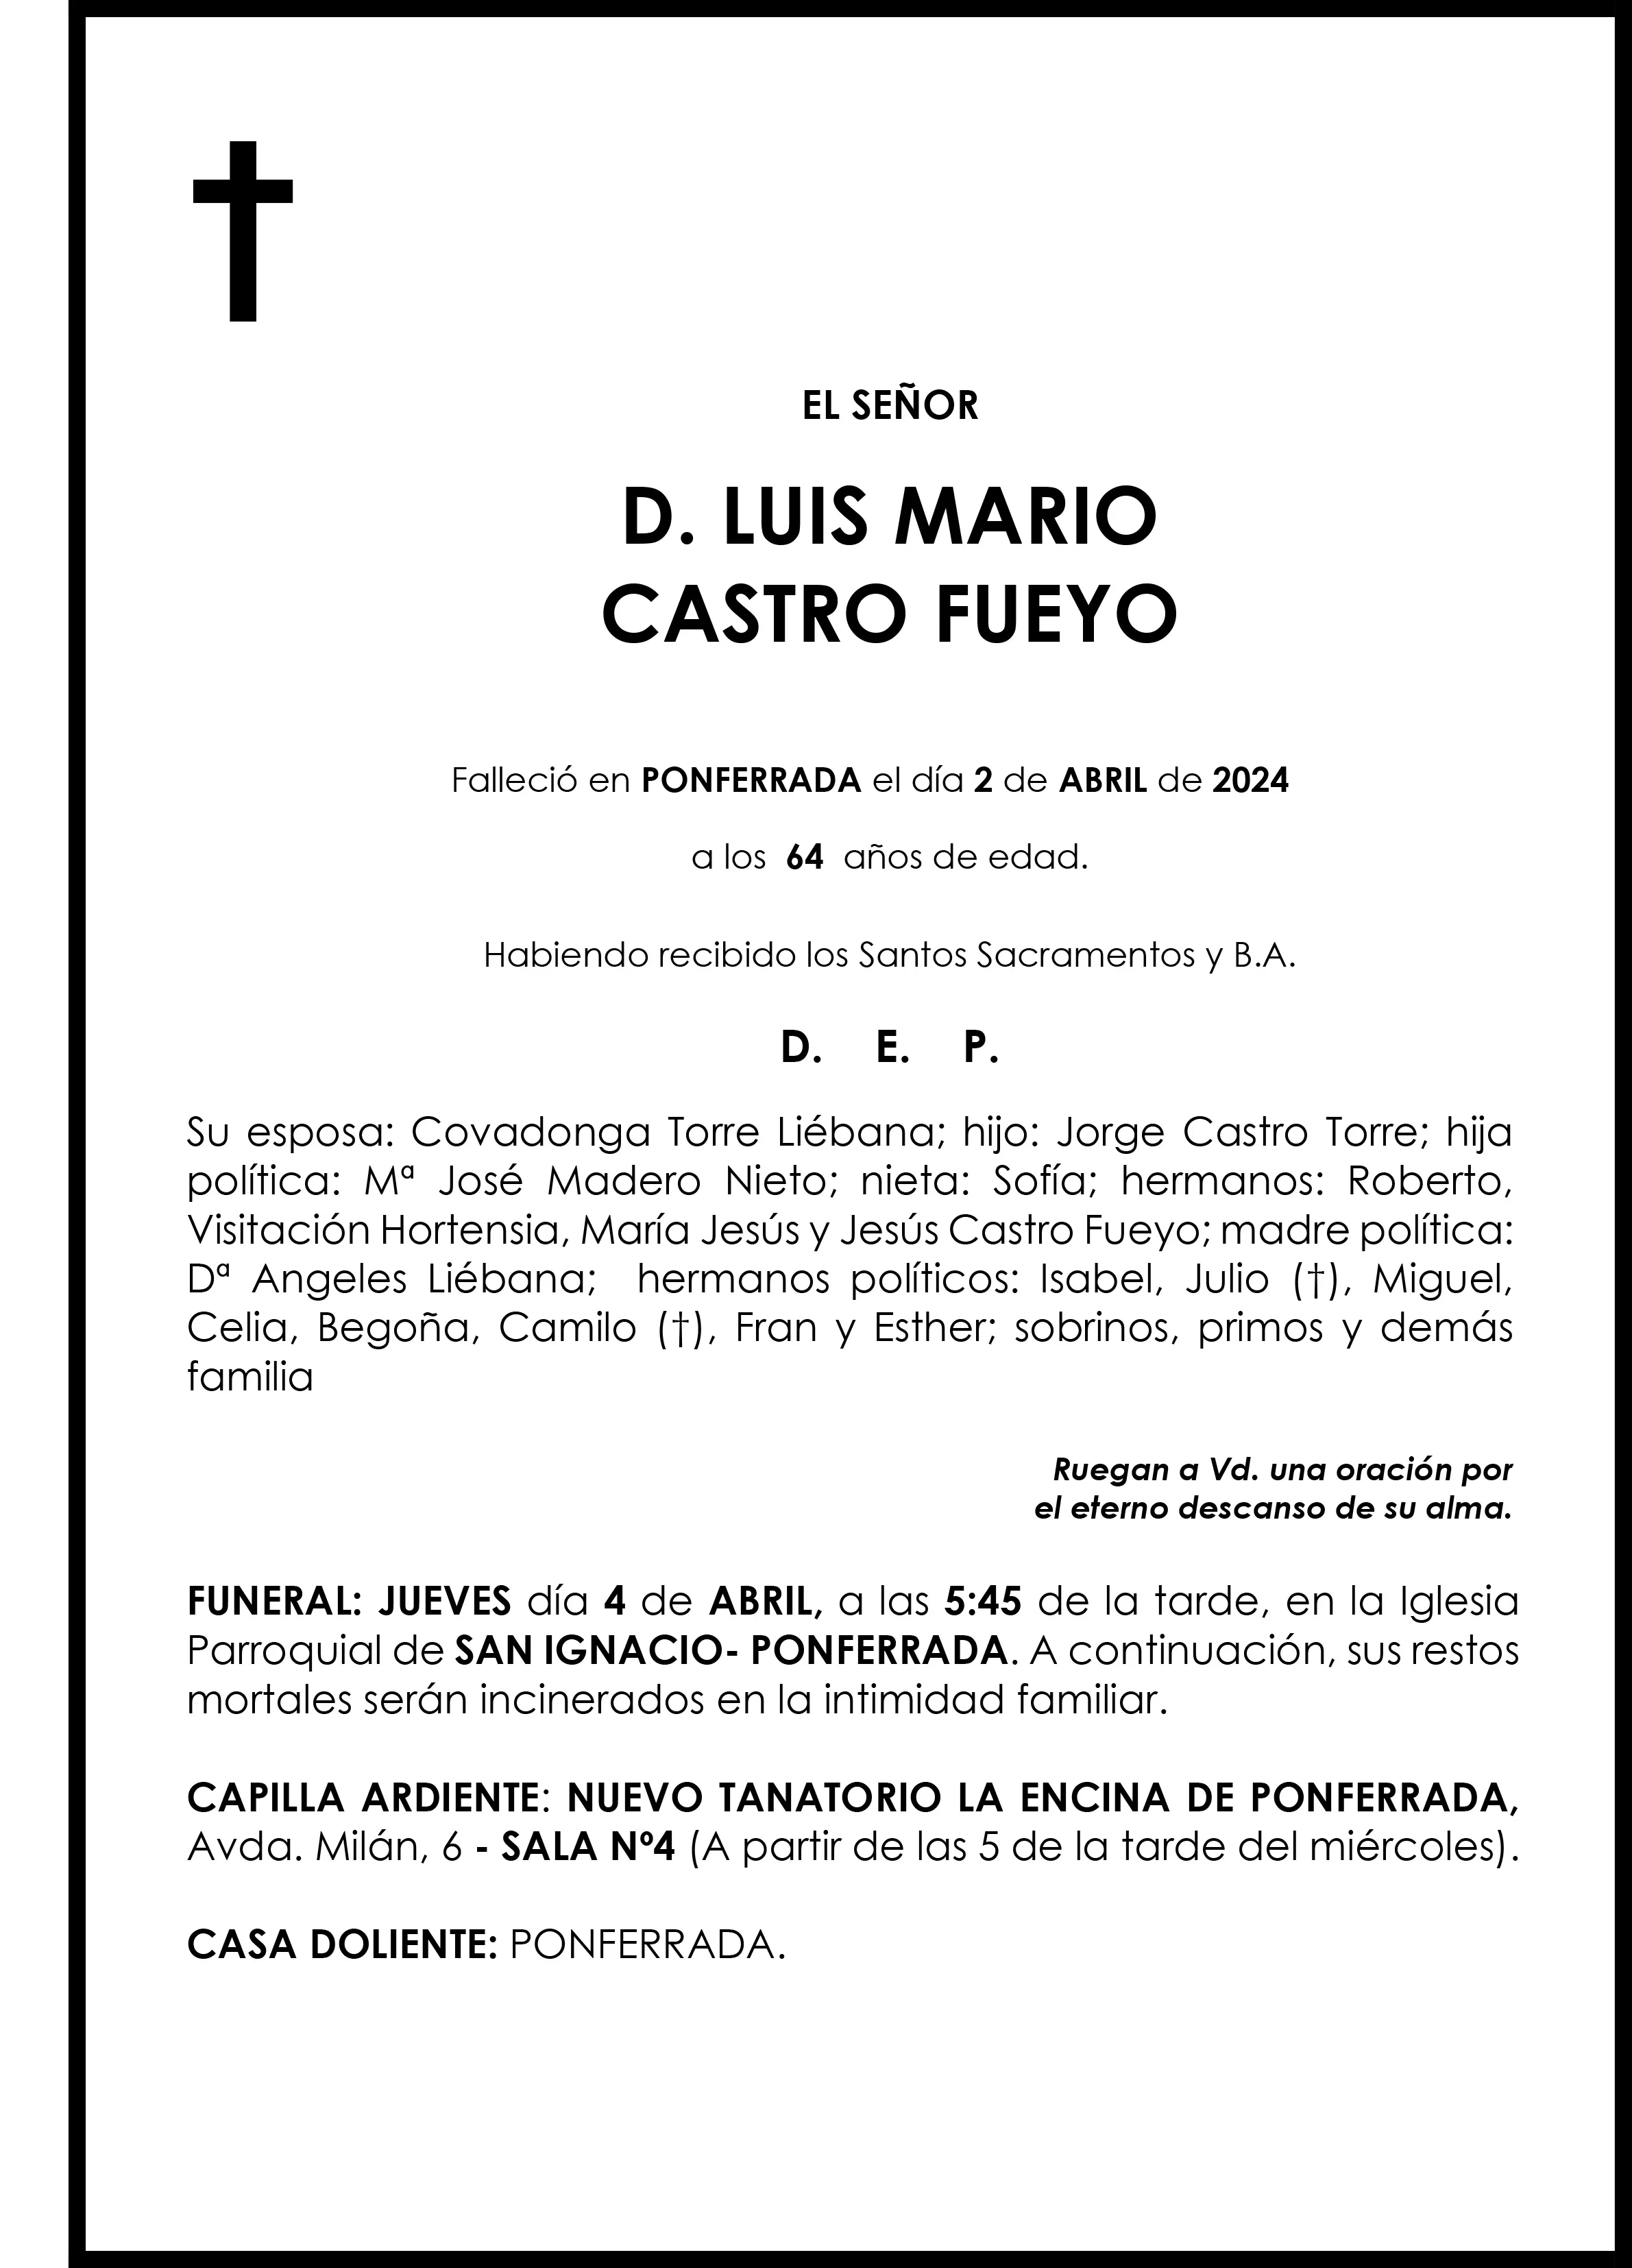 LUIS MARIO CASTRO FUEYO